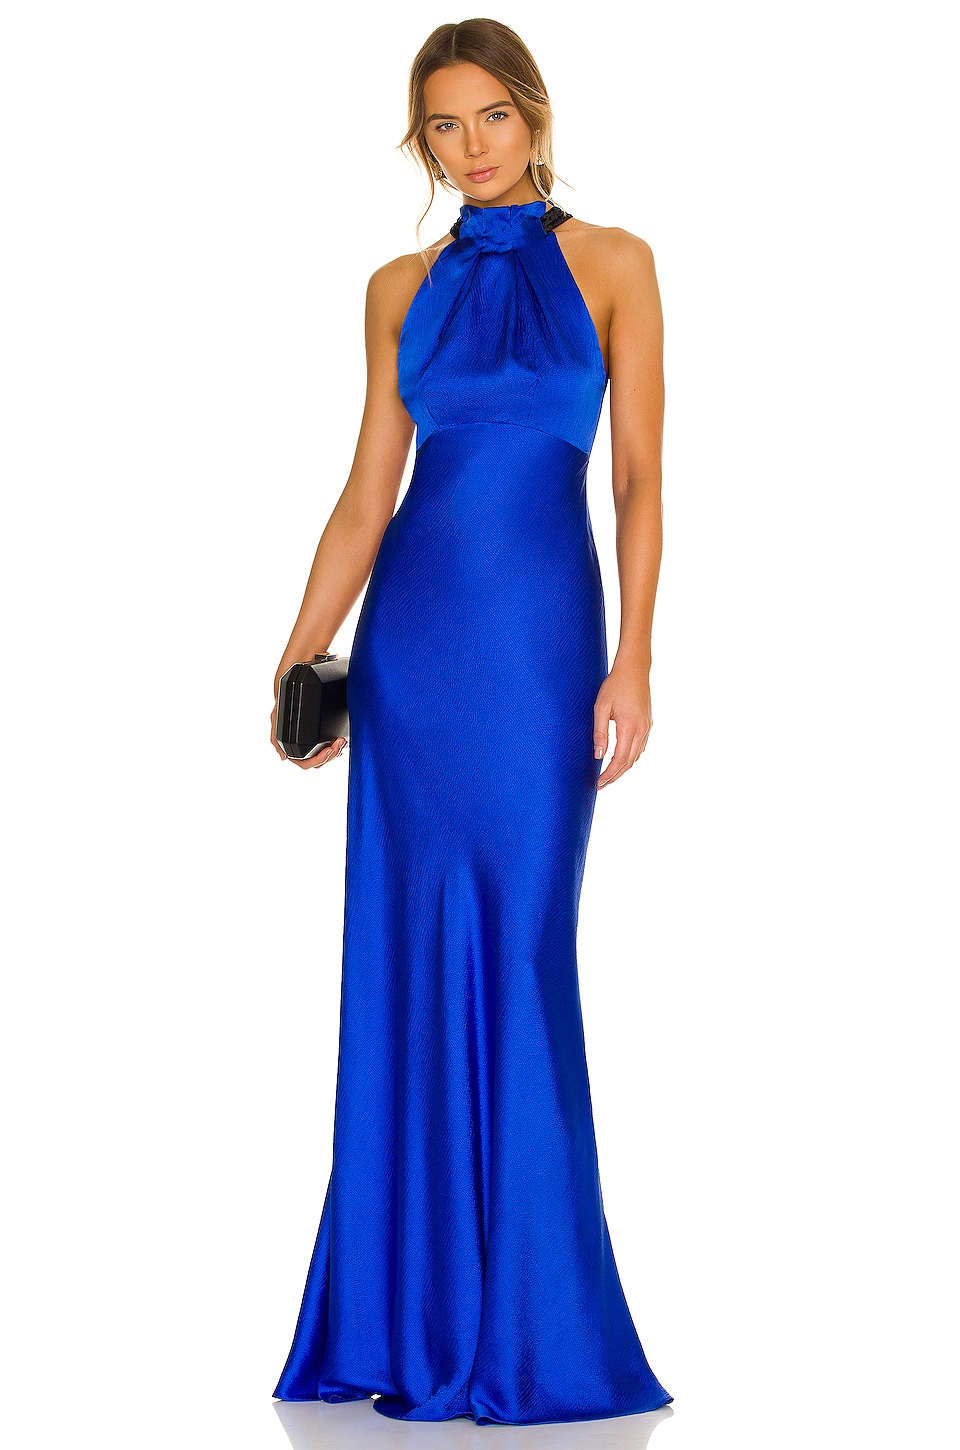 SALONI Michelle Dress in Azure Blue ...